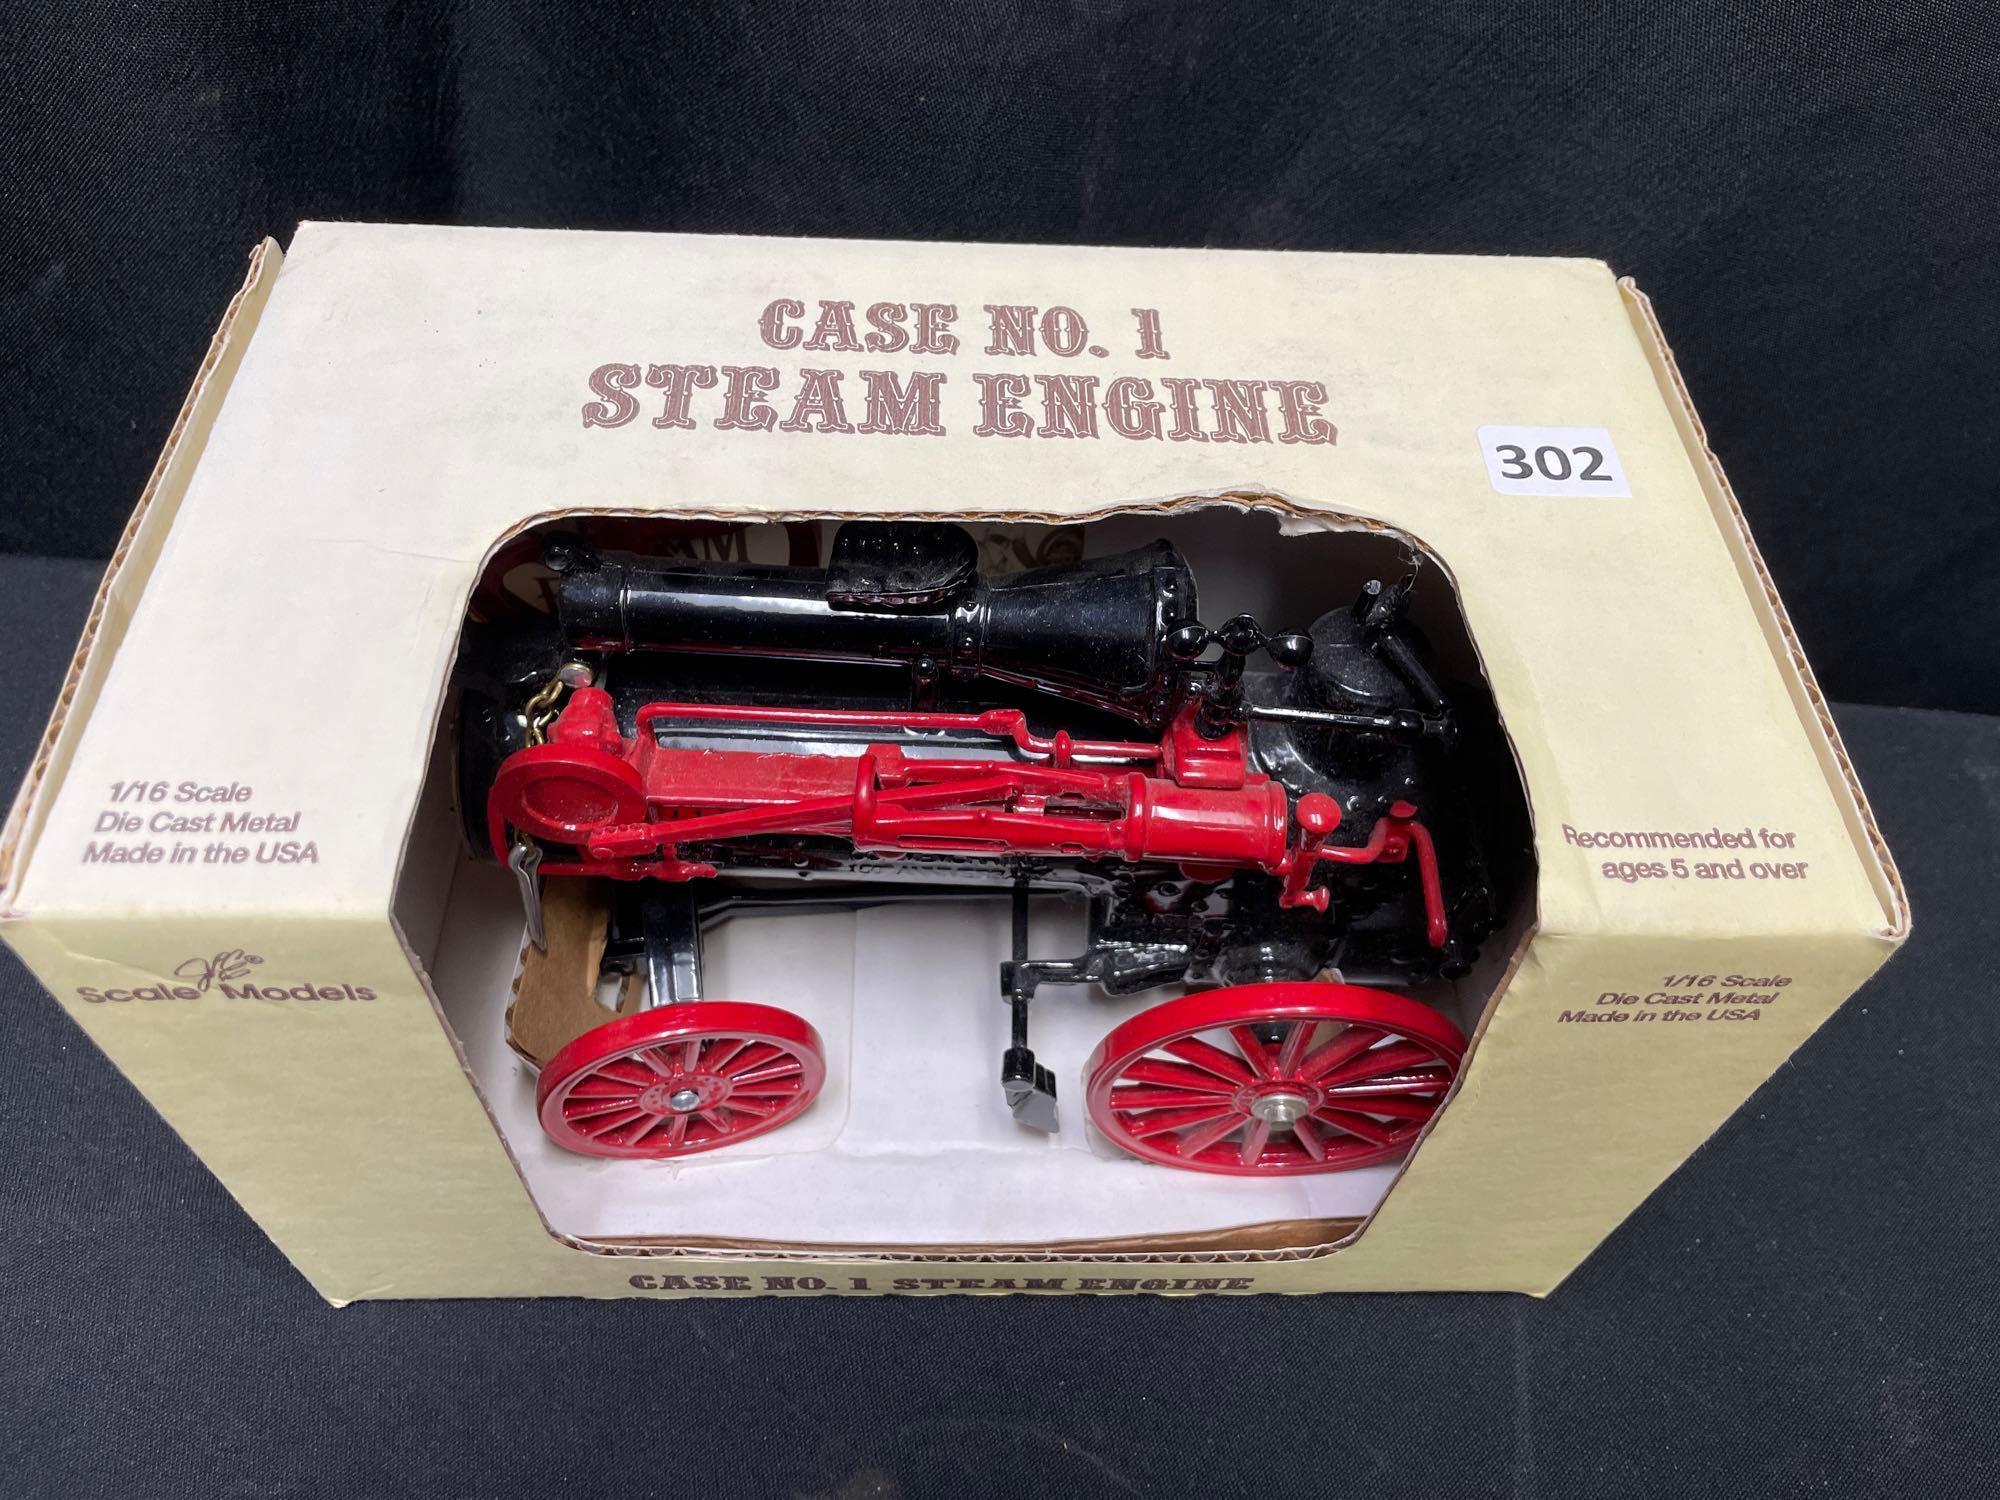 1/16th Scale Models Case No. 1 Steam Engine - NIB